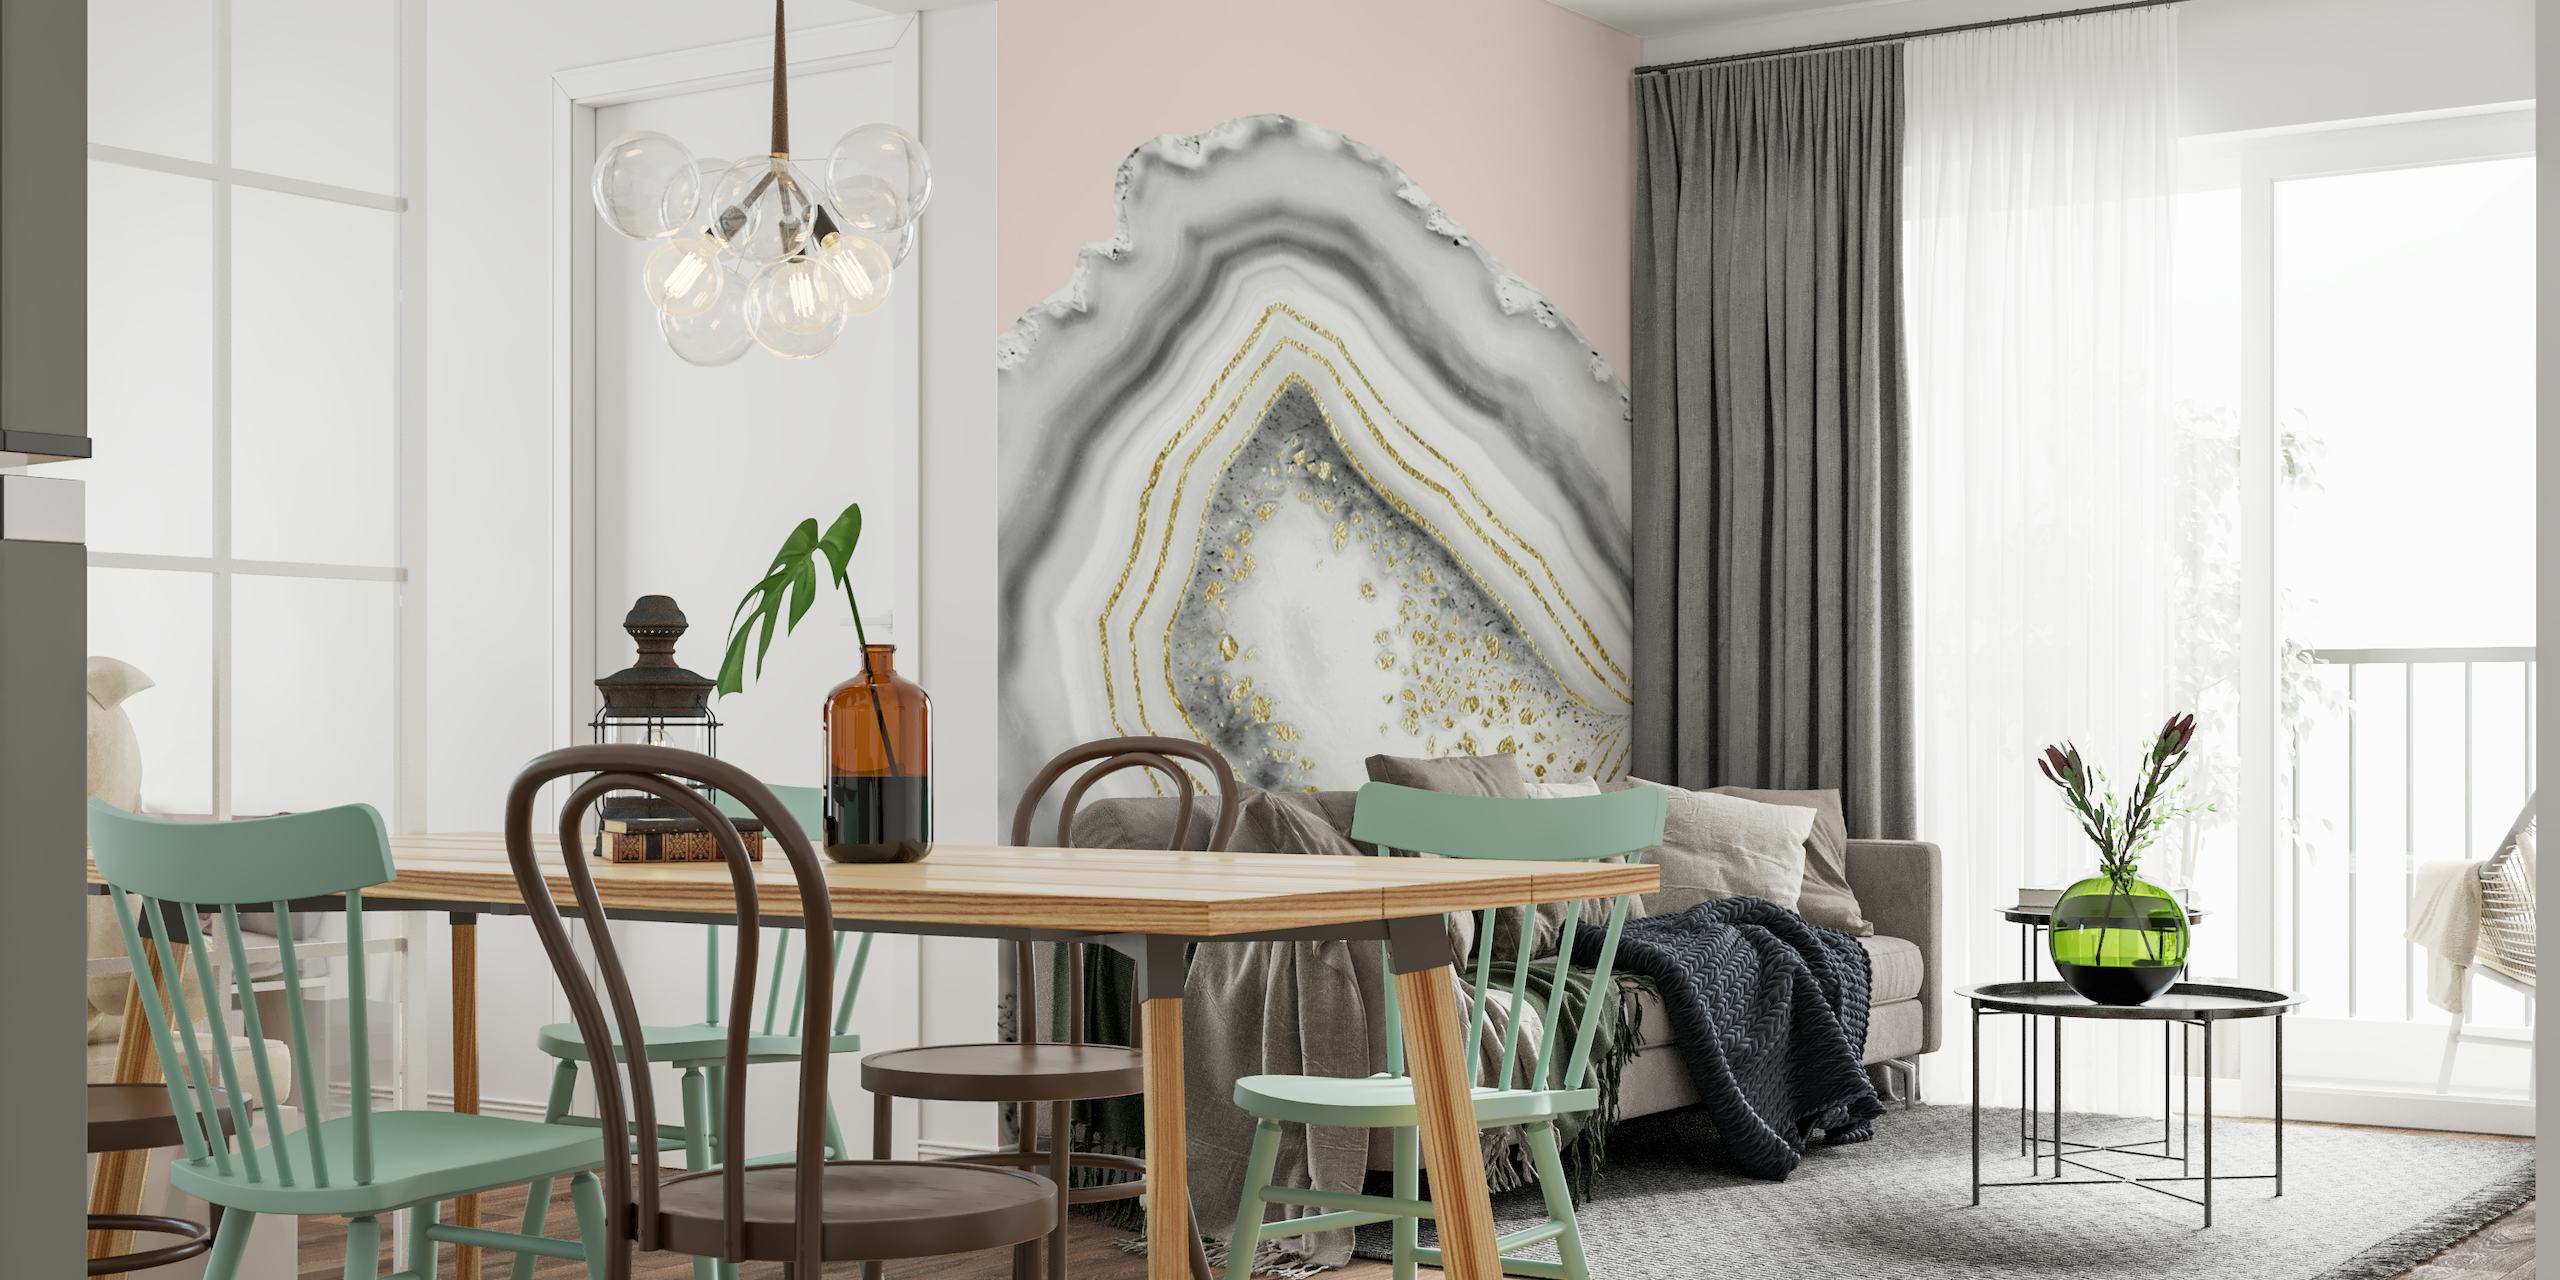 Luksuriøs hvid agat og guldfolie vægmaleri på pastelrosa baggrund